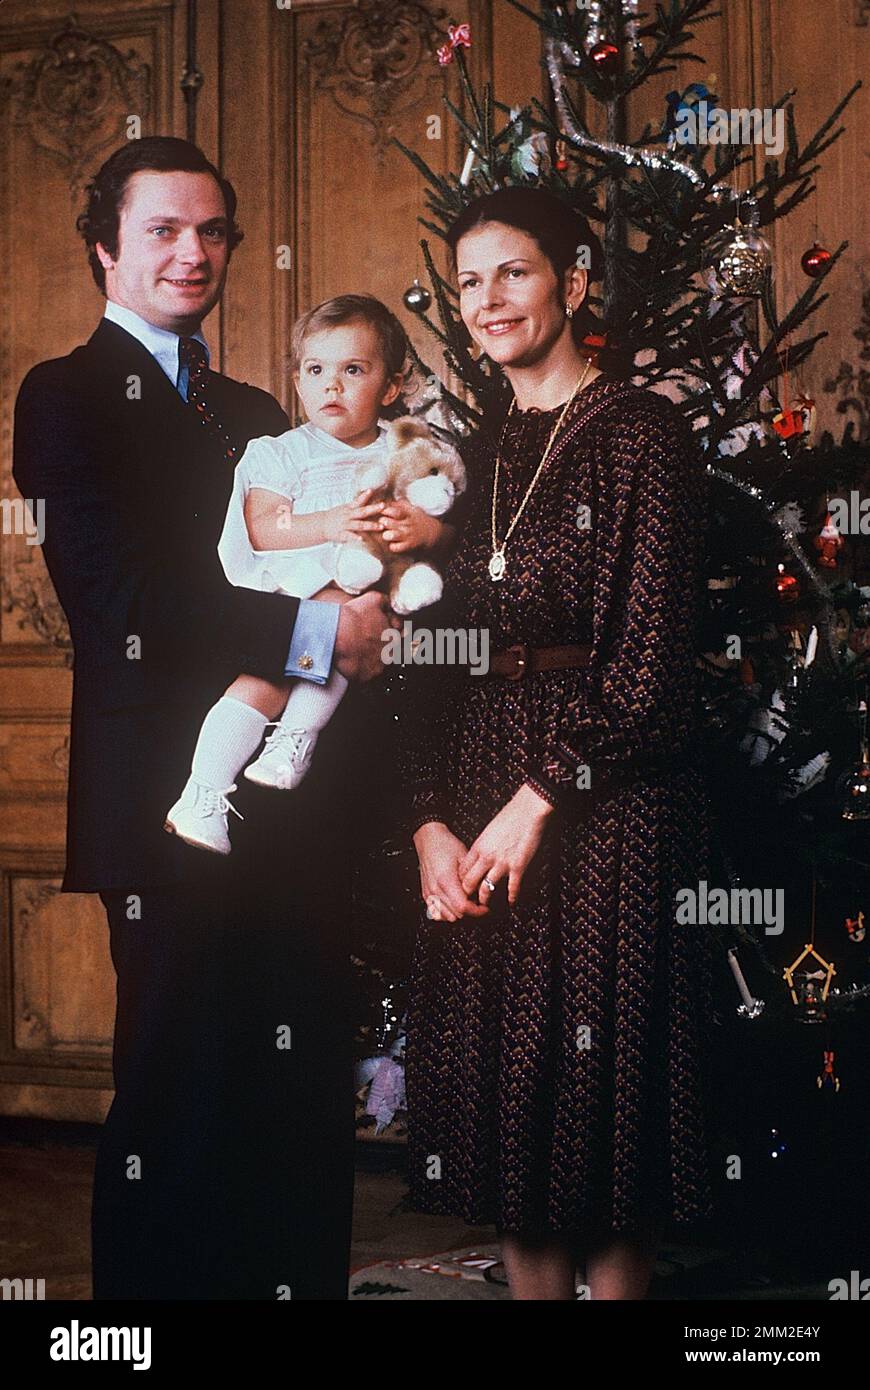 Carl XVI Gustaf, re di Svezia. Nato il 30 aprile 1946. Raffigurato con la regina Silvia e la principessa della corona Victoria alla sessione fotografica annuale di natale 1978. Foto Stock